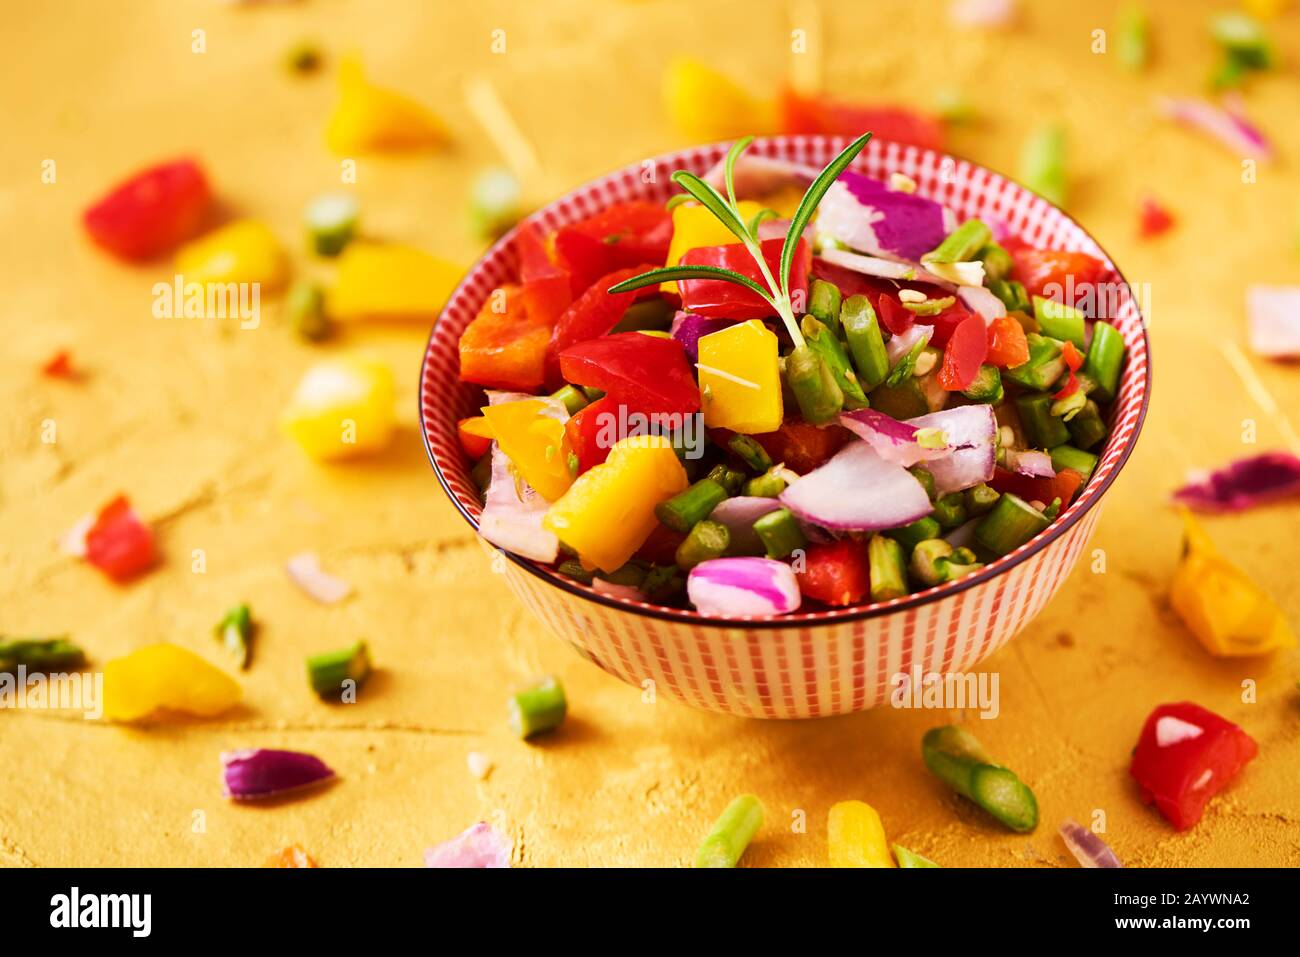 gros plan d'un bol avec un mélange de différents légumes crus hachés, tels que les asperges, l'oignon ou le poivron jaune et rouge, sur une surface dorée texturée Banque D'Images